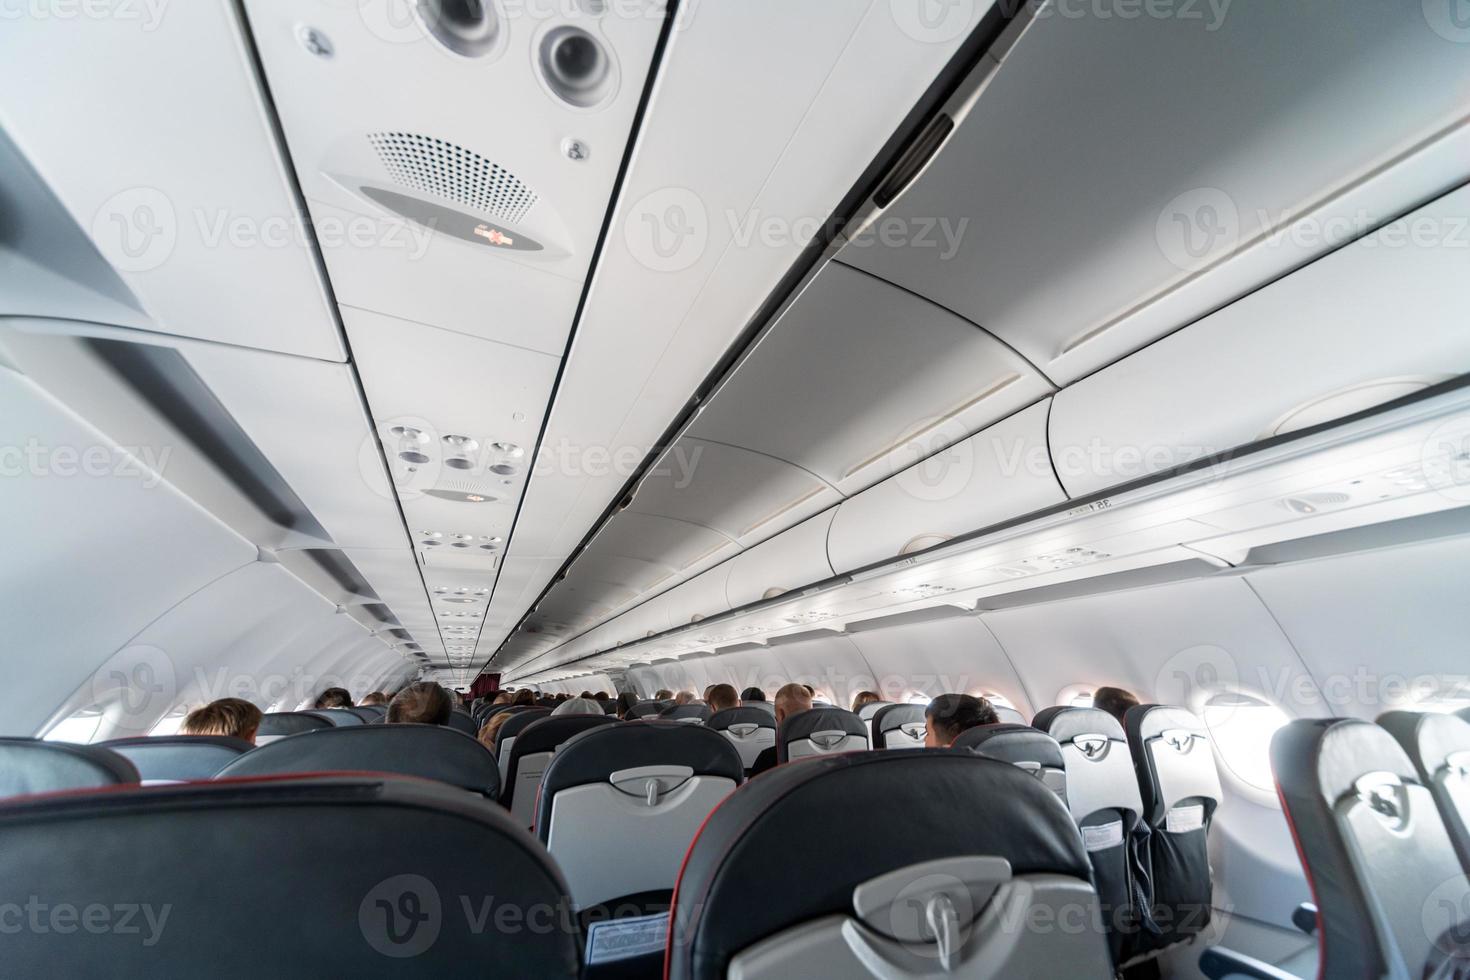 painel de controle do ar condicionado do avião sobre os assentos, ar abafado na cabine da aeronave com pessoas, nova companhia aérea de baixo custo foto